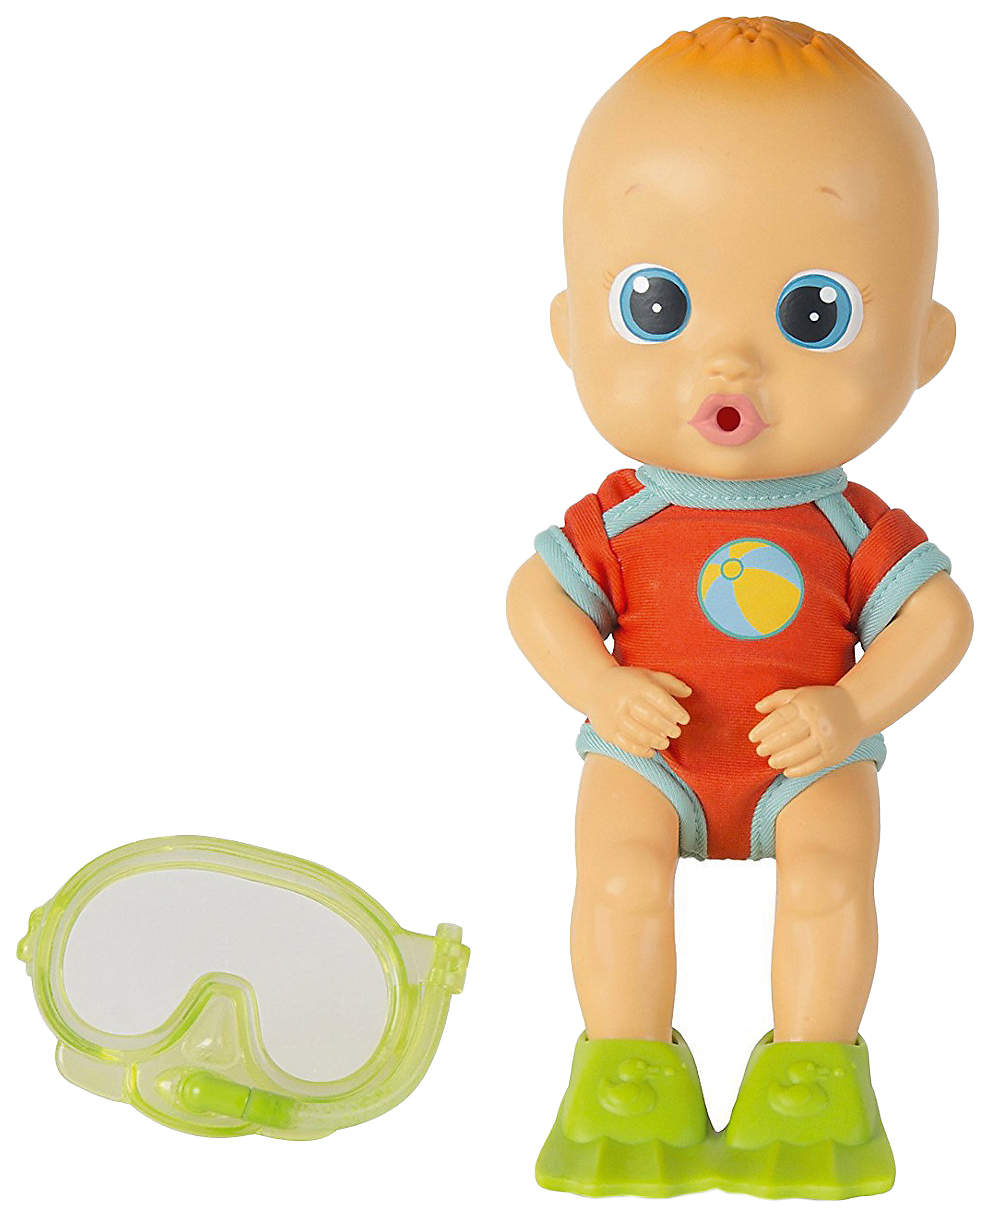 Кукла для купания Bloopies - Коби, в открытой коробке, 24 см IMC toys imc toys bloopies кукла для купания коби